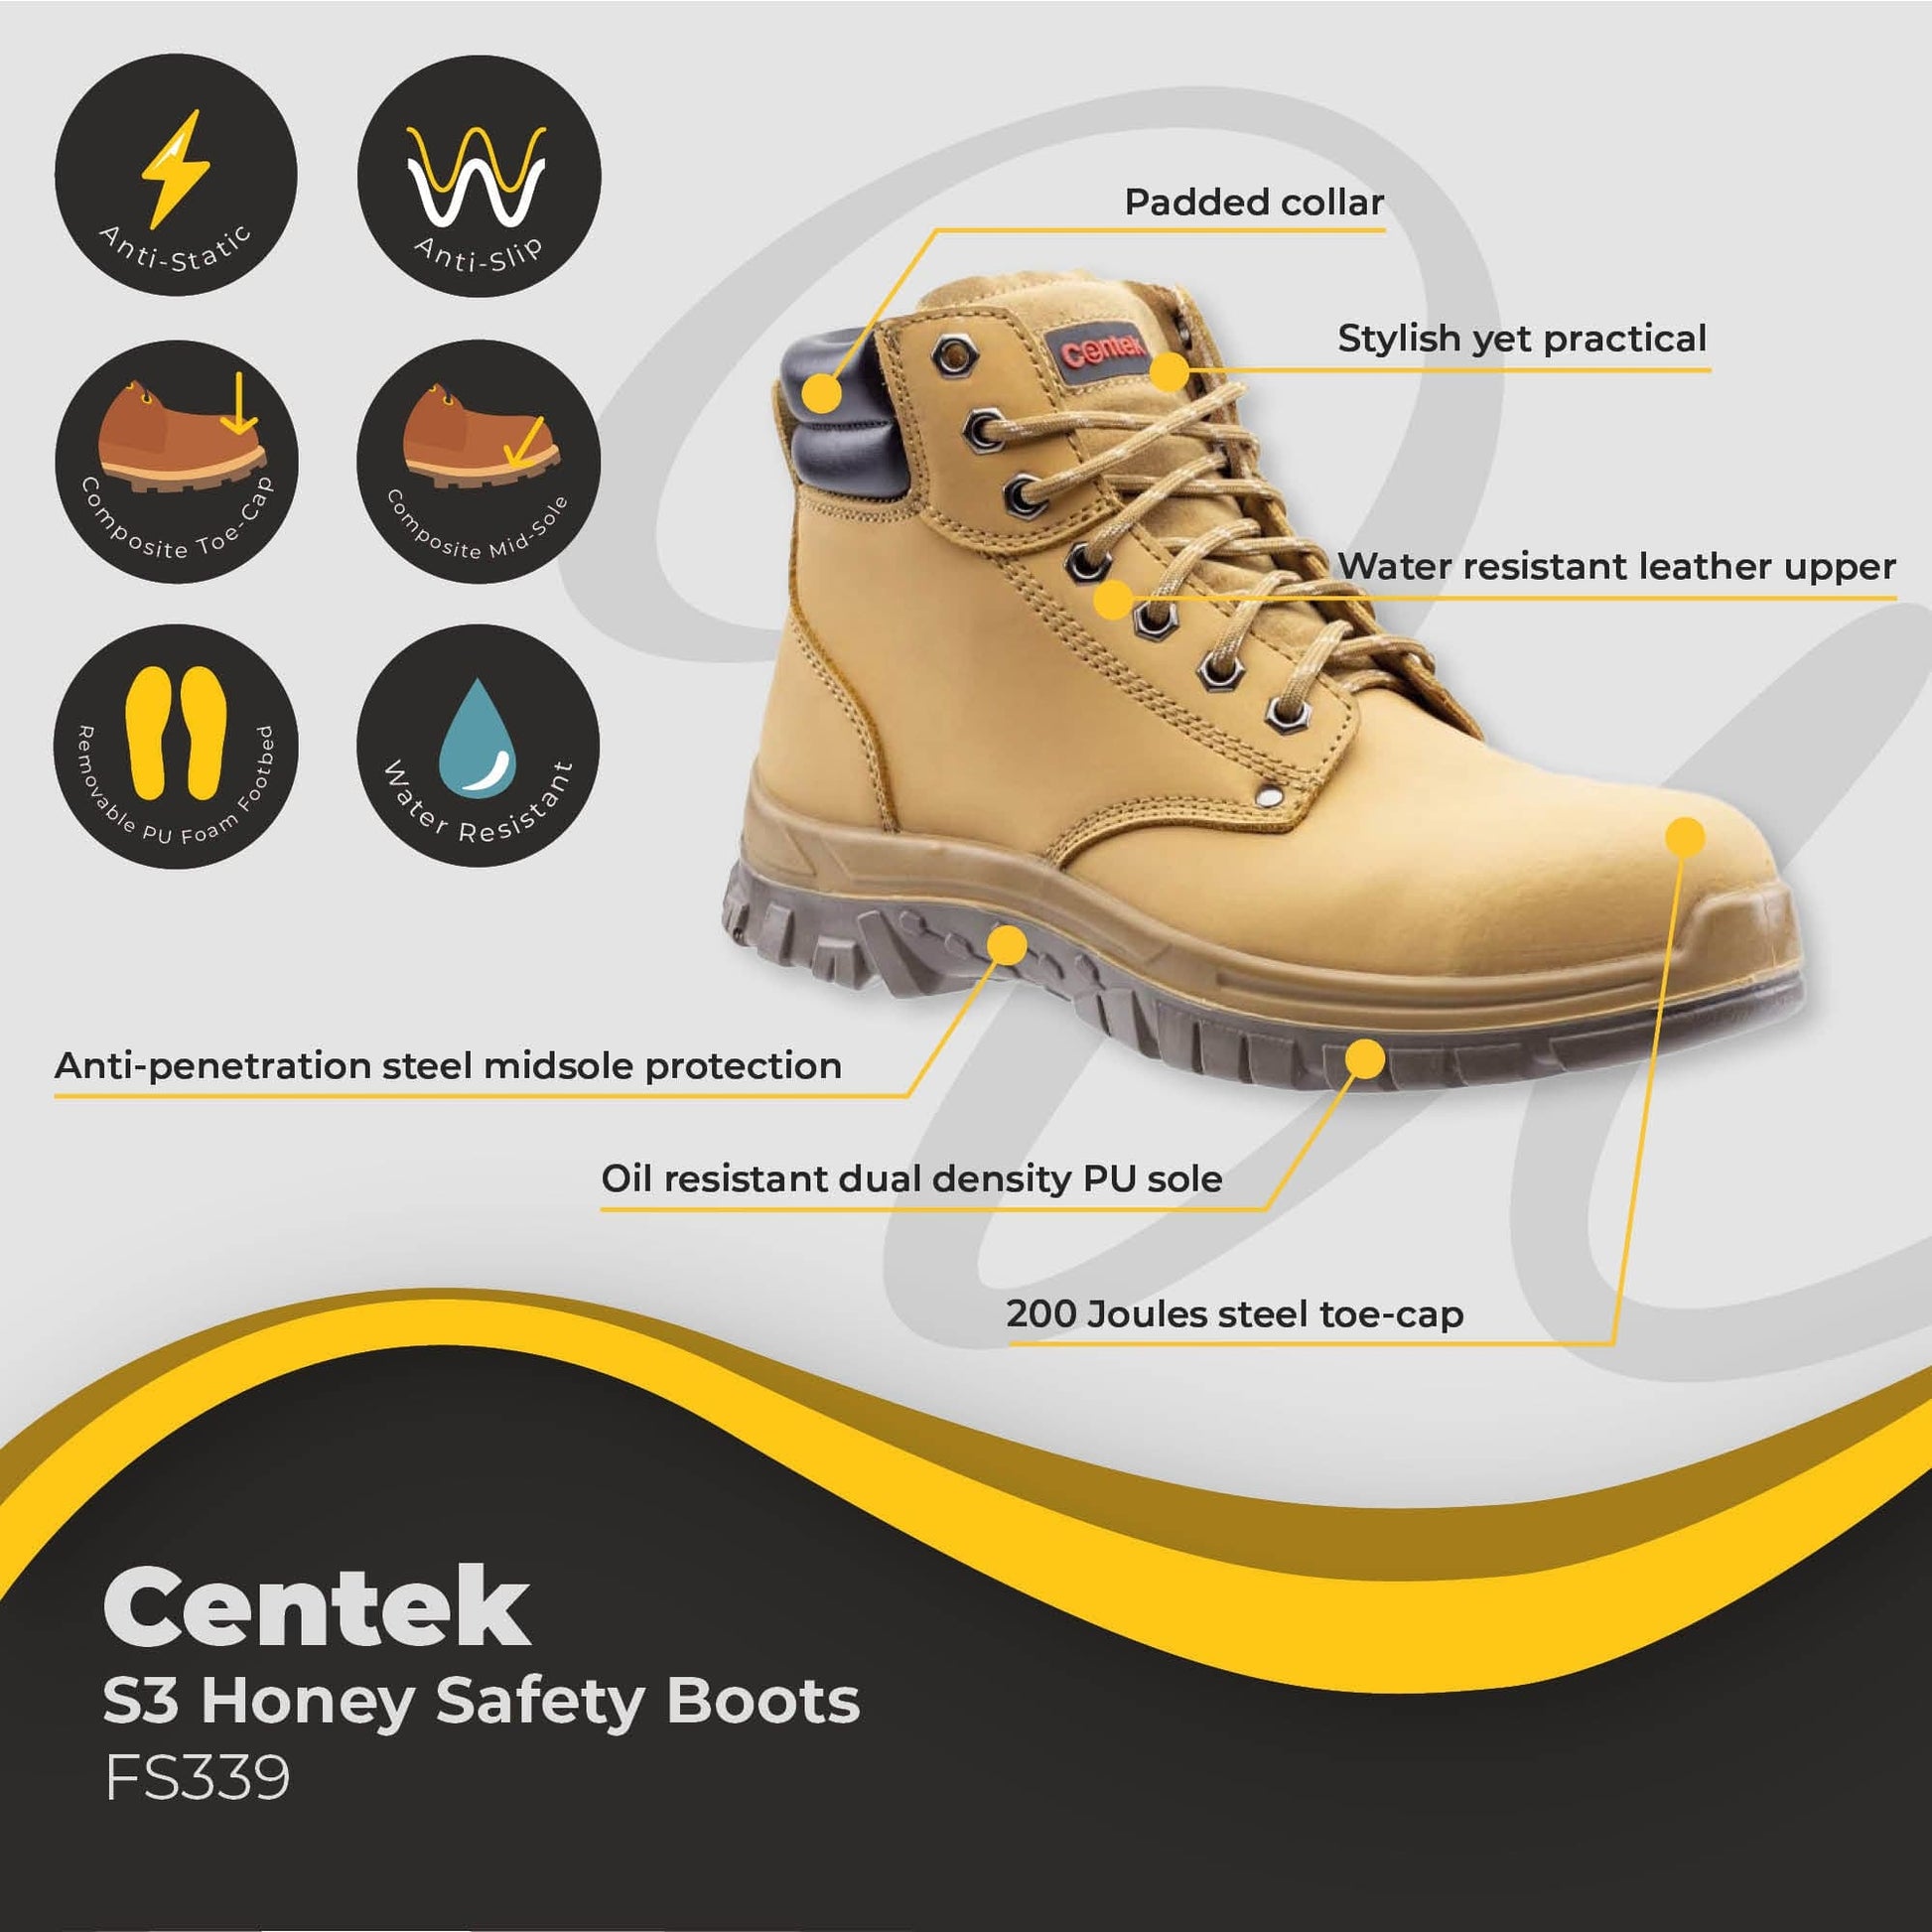 centek honey safety boot s3 fs339 dd348 06